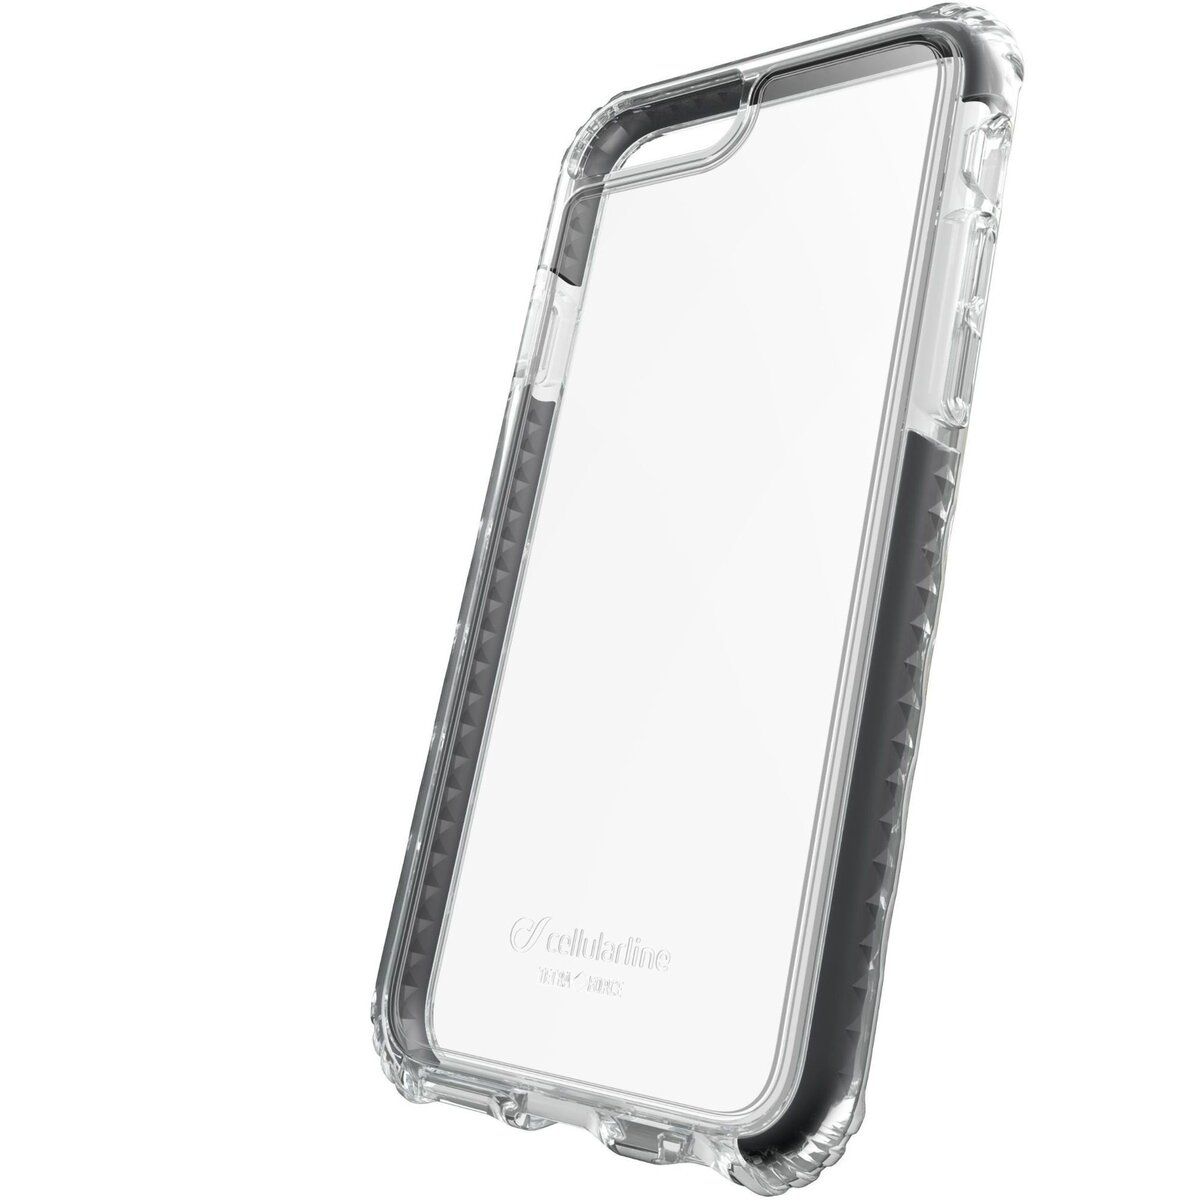 CELLULAR Coque en silicone renforcée noir anti choc + arrière rigide pour iPhone 6S/6